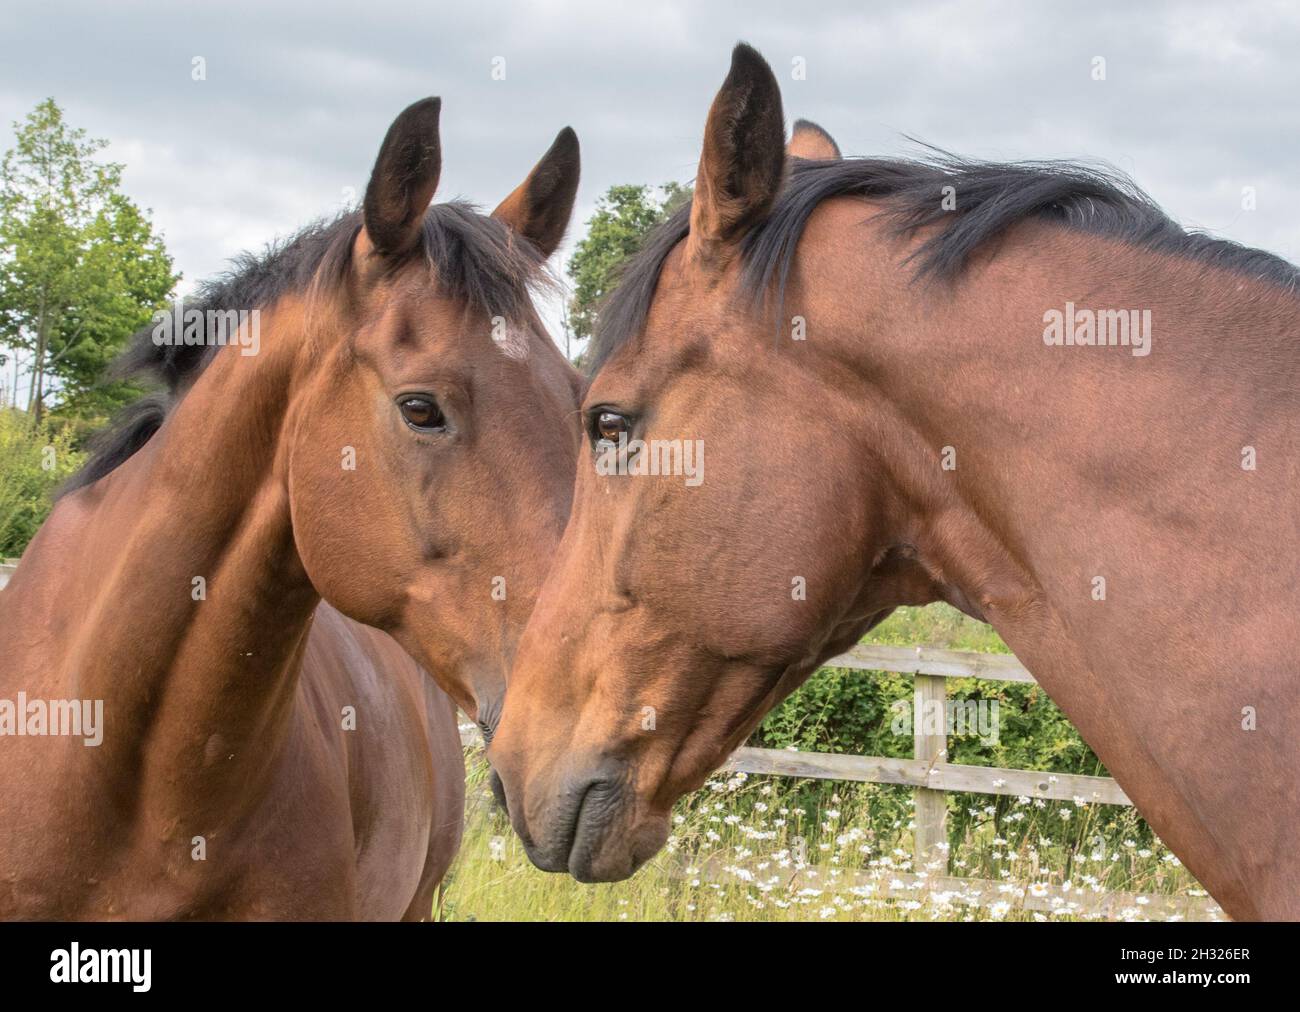 Deux chevaux de baie assortis, le meilleur des amis et des compagnons , heureusement s'est avéré dans la prairie.Suffolk, Royaume-Uni Banque D'Images